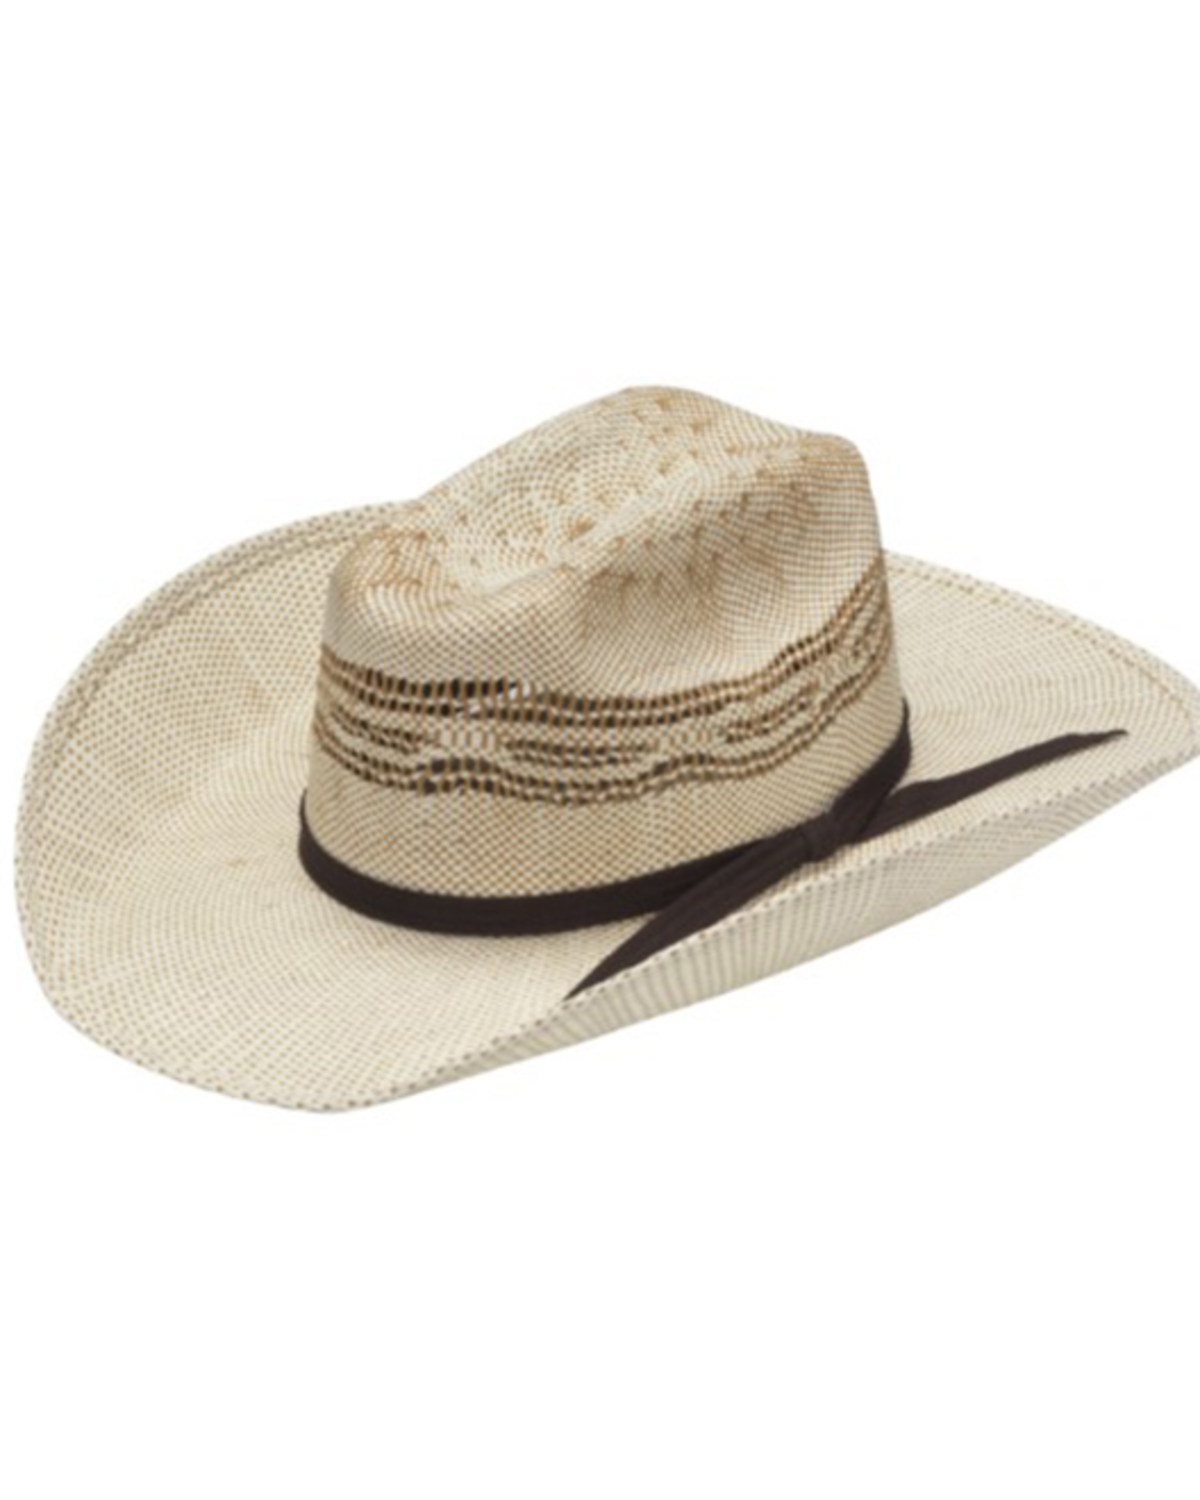 M & F Western Infant Straw Cowboy Hat